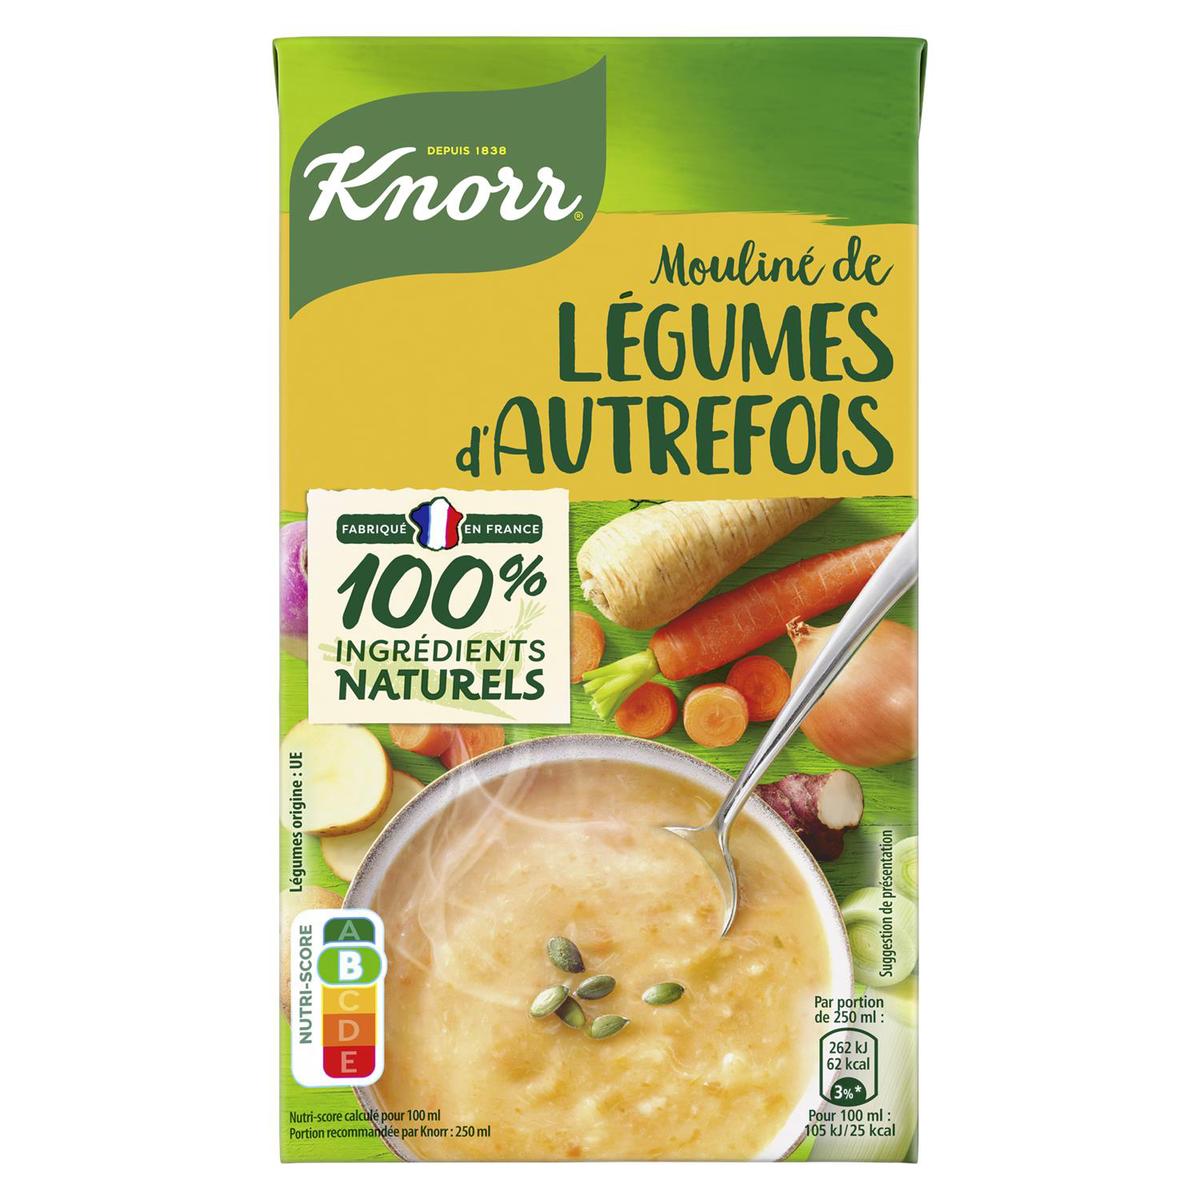 La Soupe de légumes - mon-marché.fr